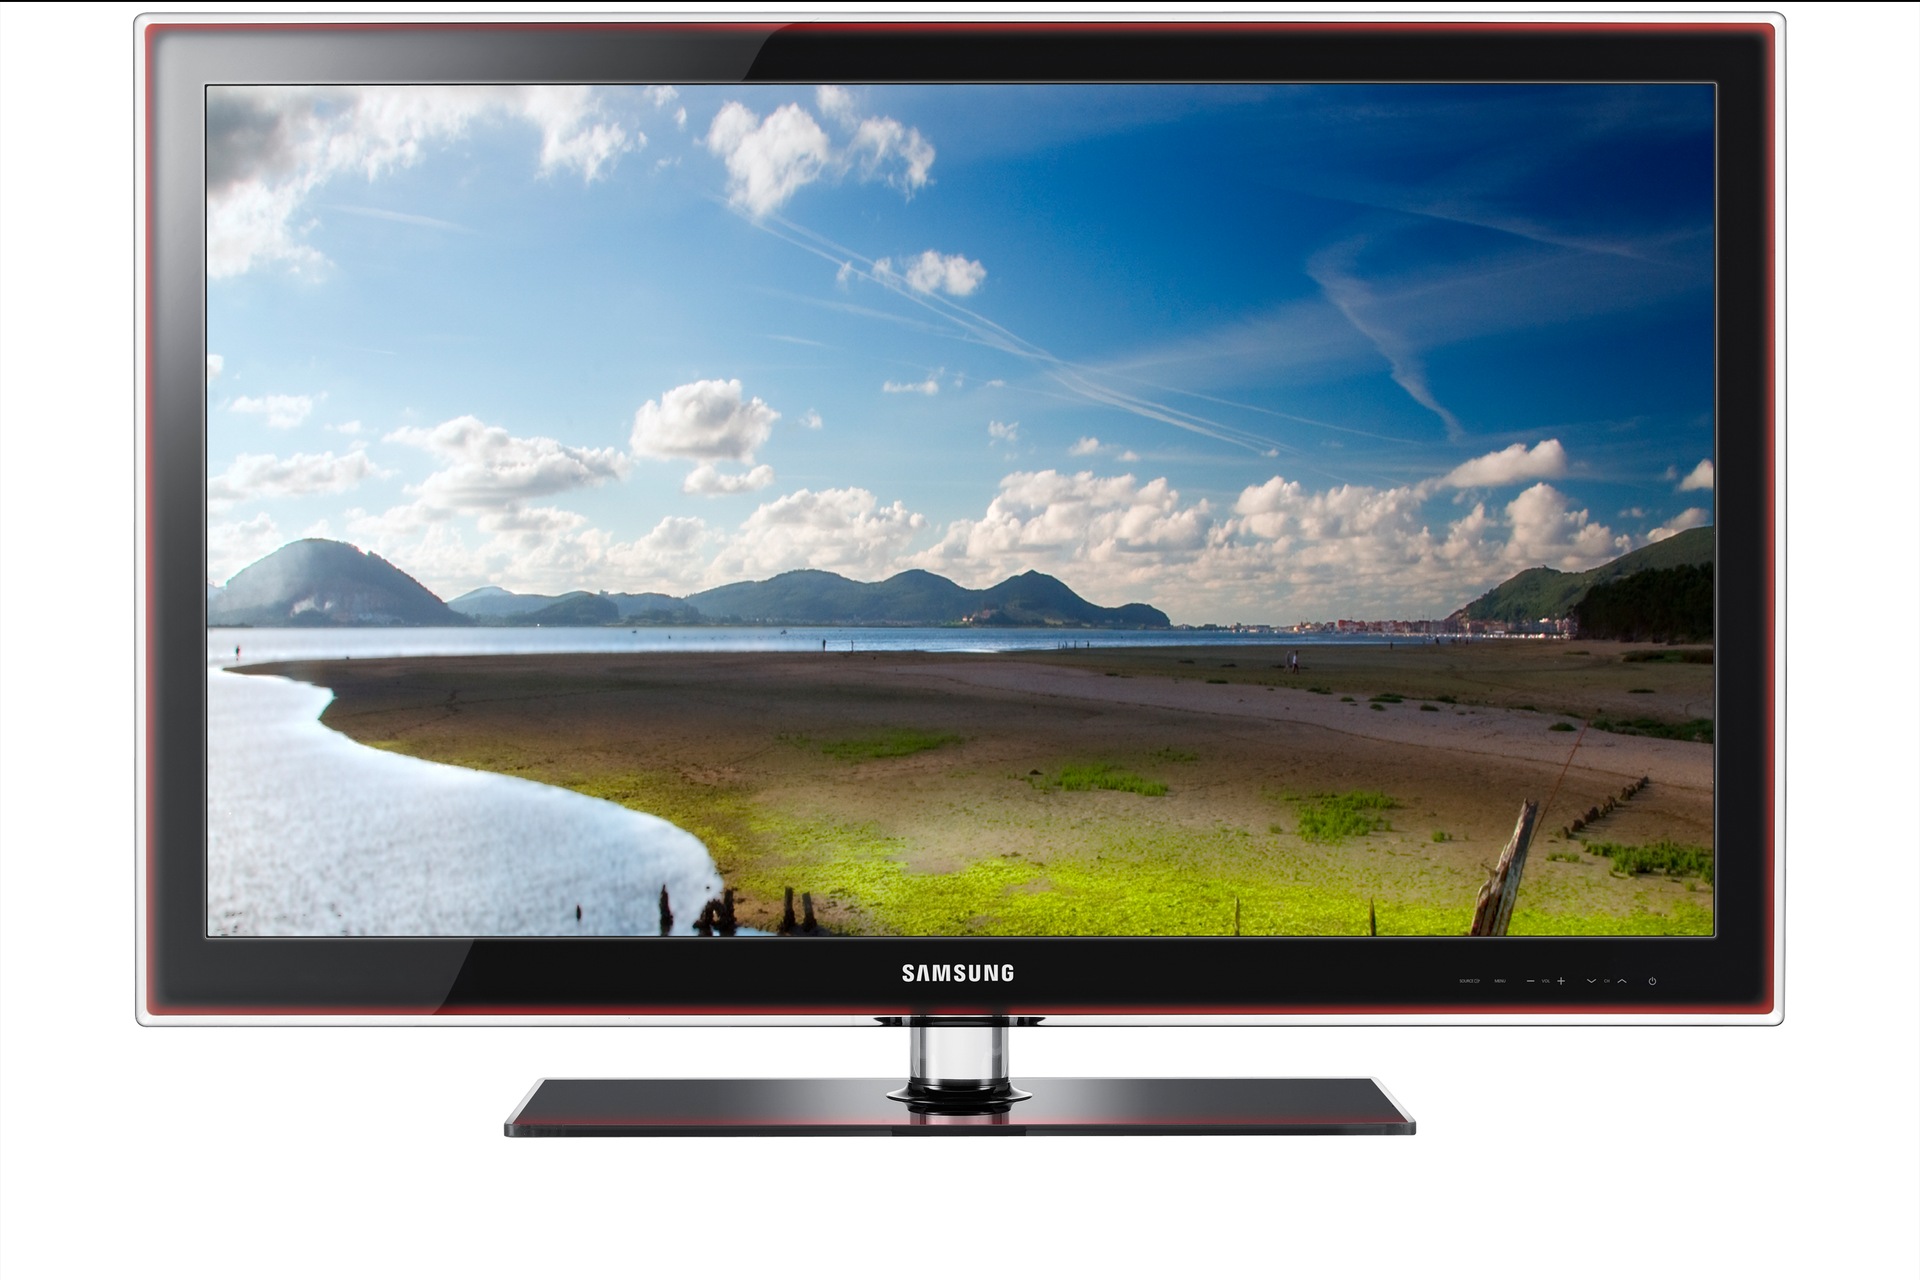 Samsung led 40 Smart TV 2013